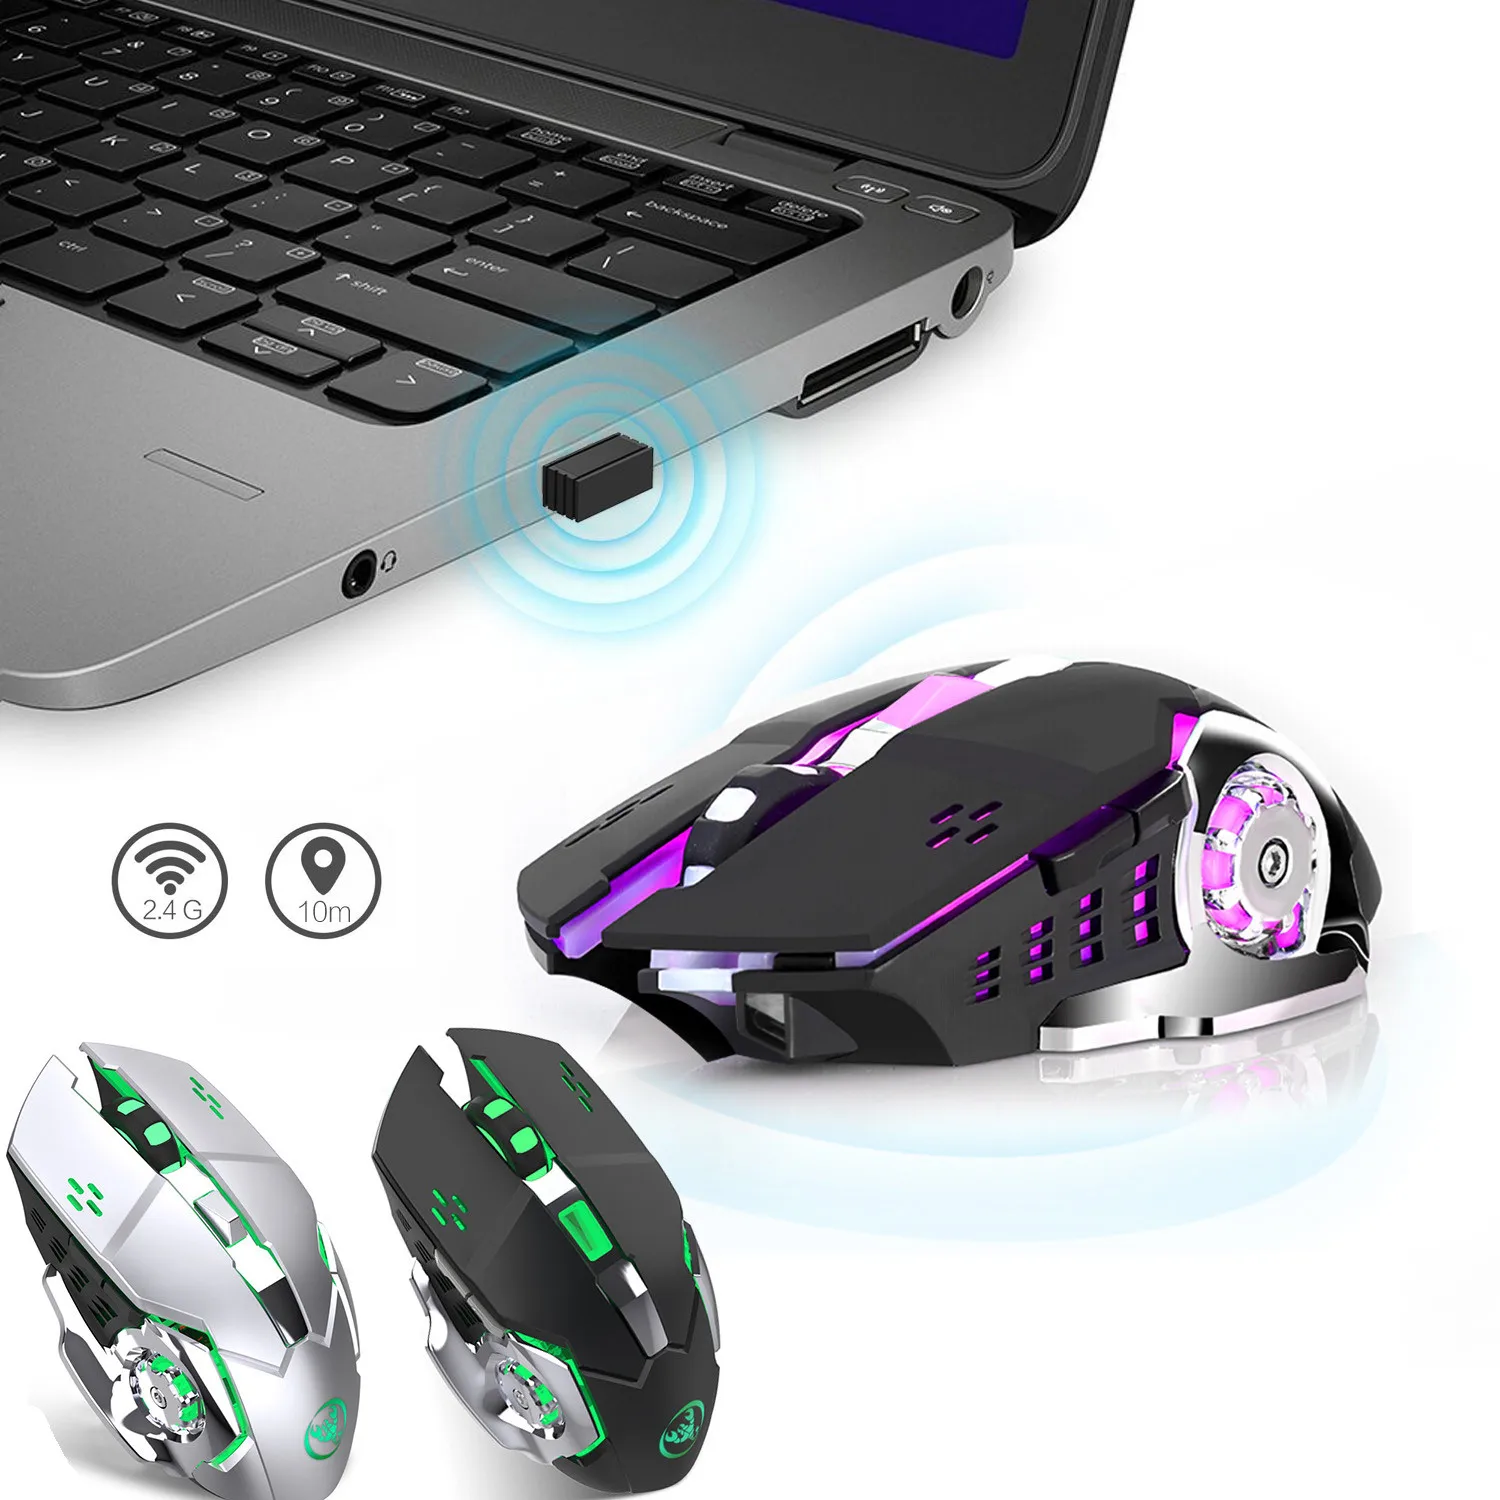 EPULA 2019 Новая мода hxsj M70GY эргономичный беспроводной игровой мышь с 5 пуговицы + USB приемник подсветка компьютер